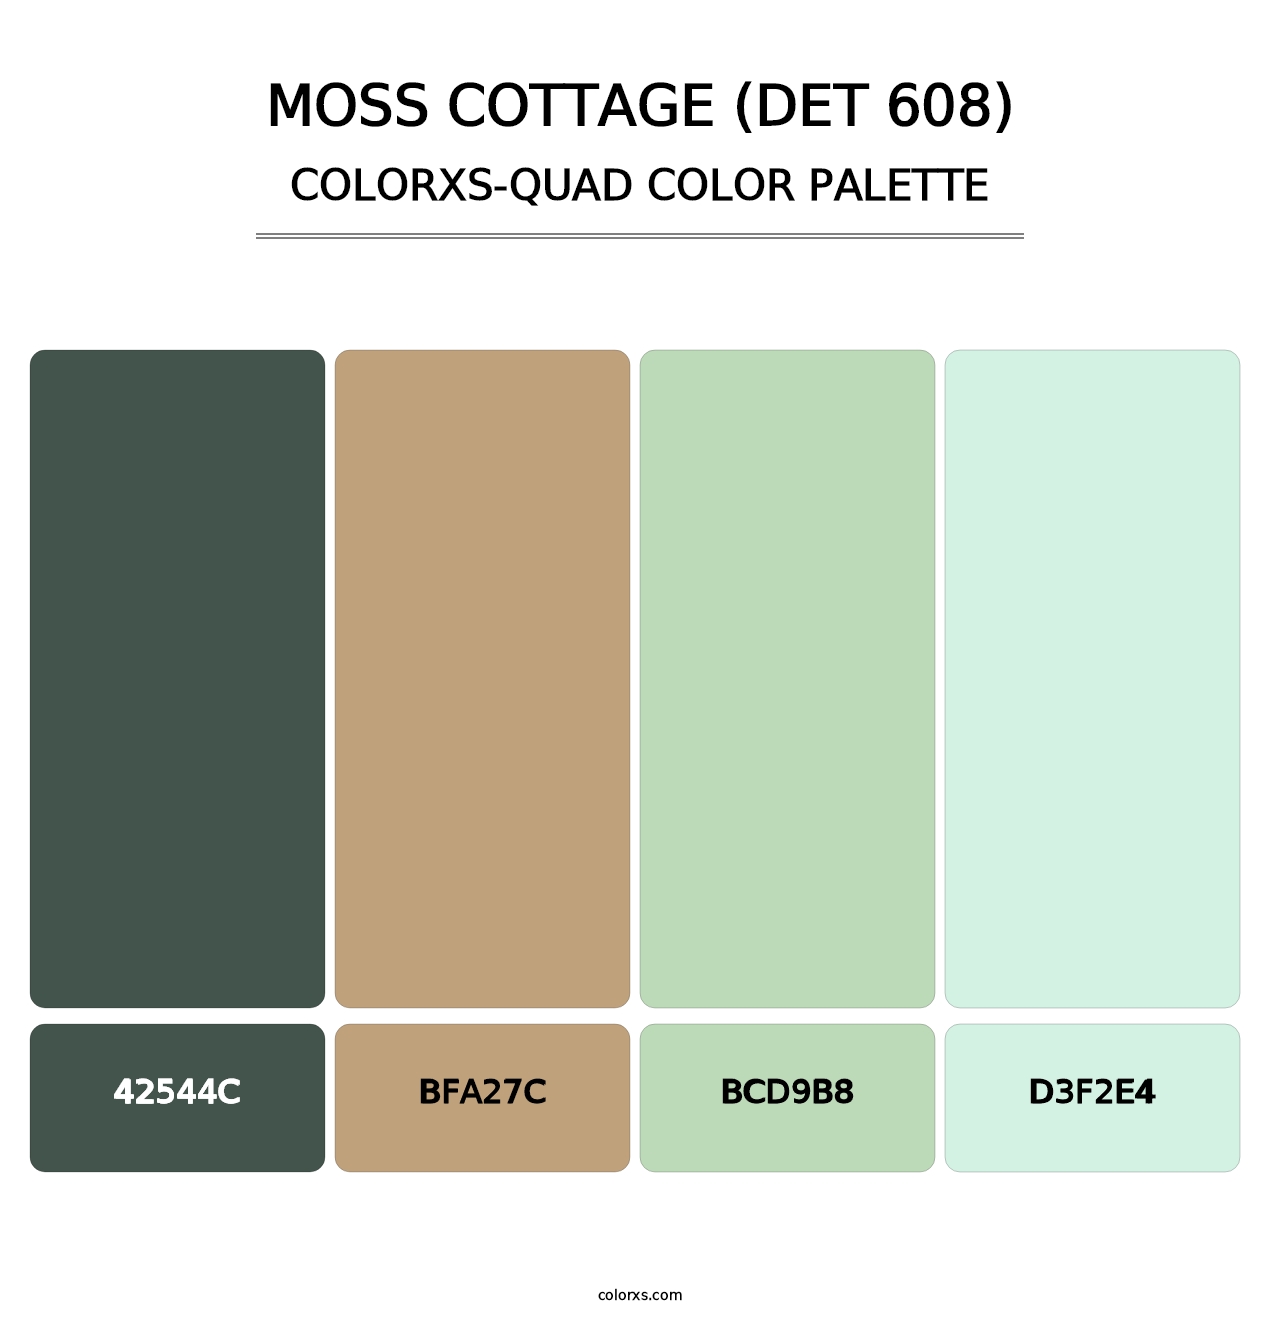 Moss Cottage (DET 608) - Colorxs Quad Palette